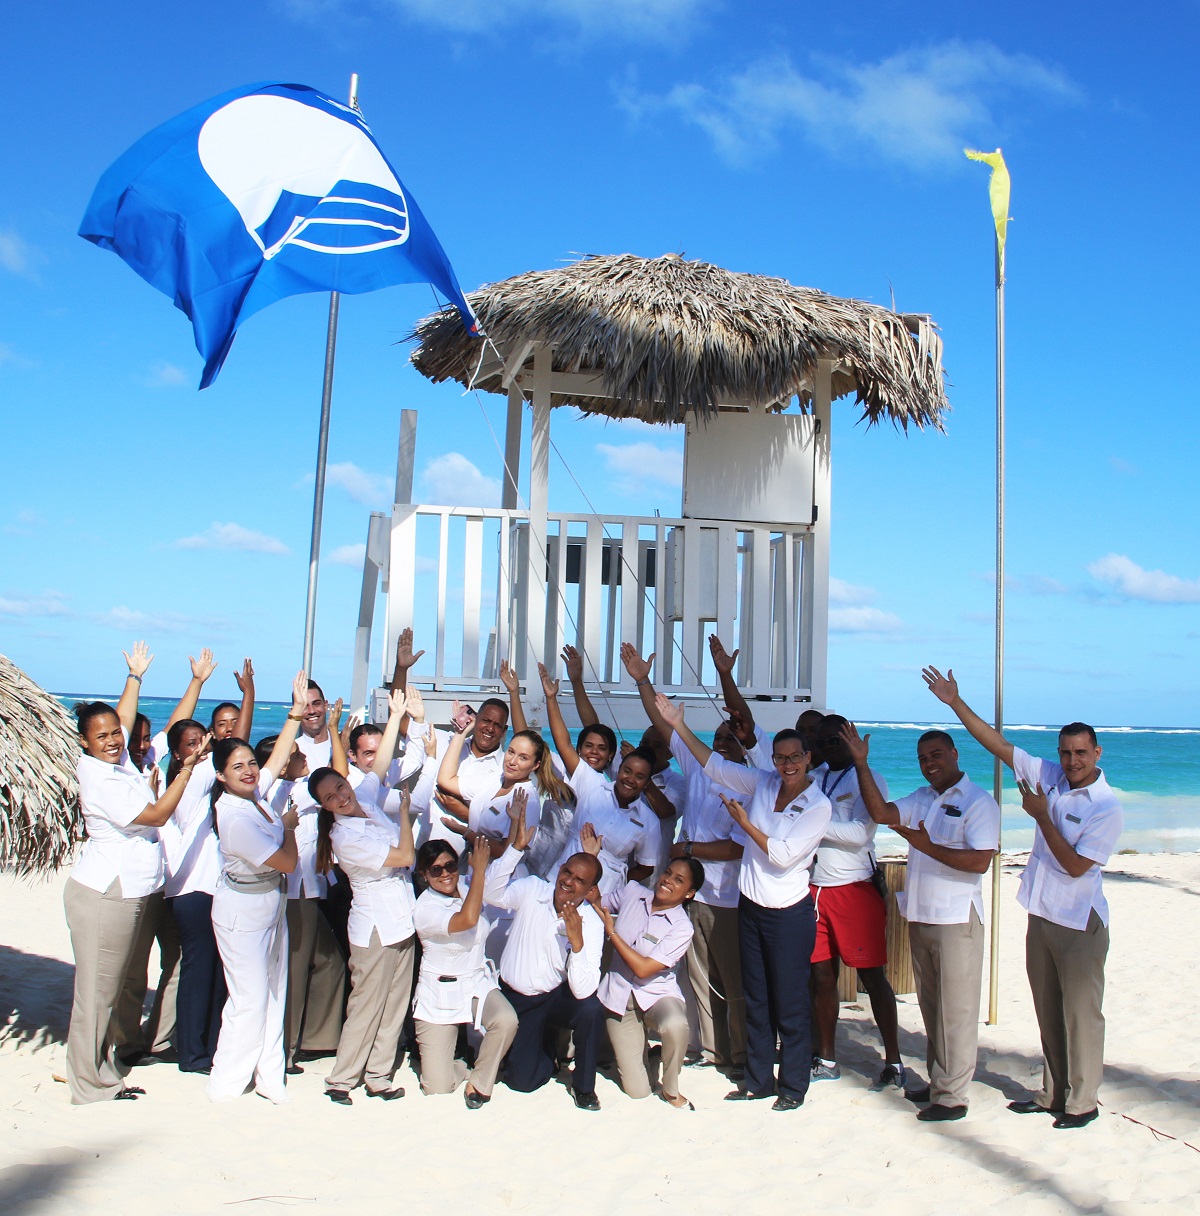 Paradisus Palma Real y Paradisus Punta Cana reciben Certificación Internacional Bandera Azul